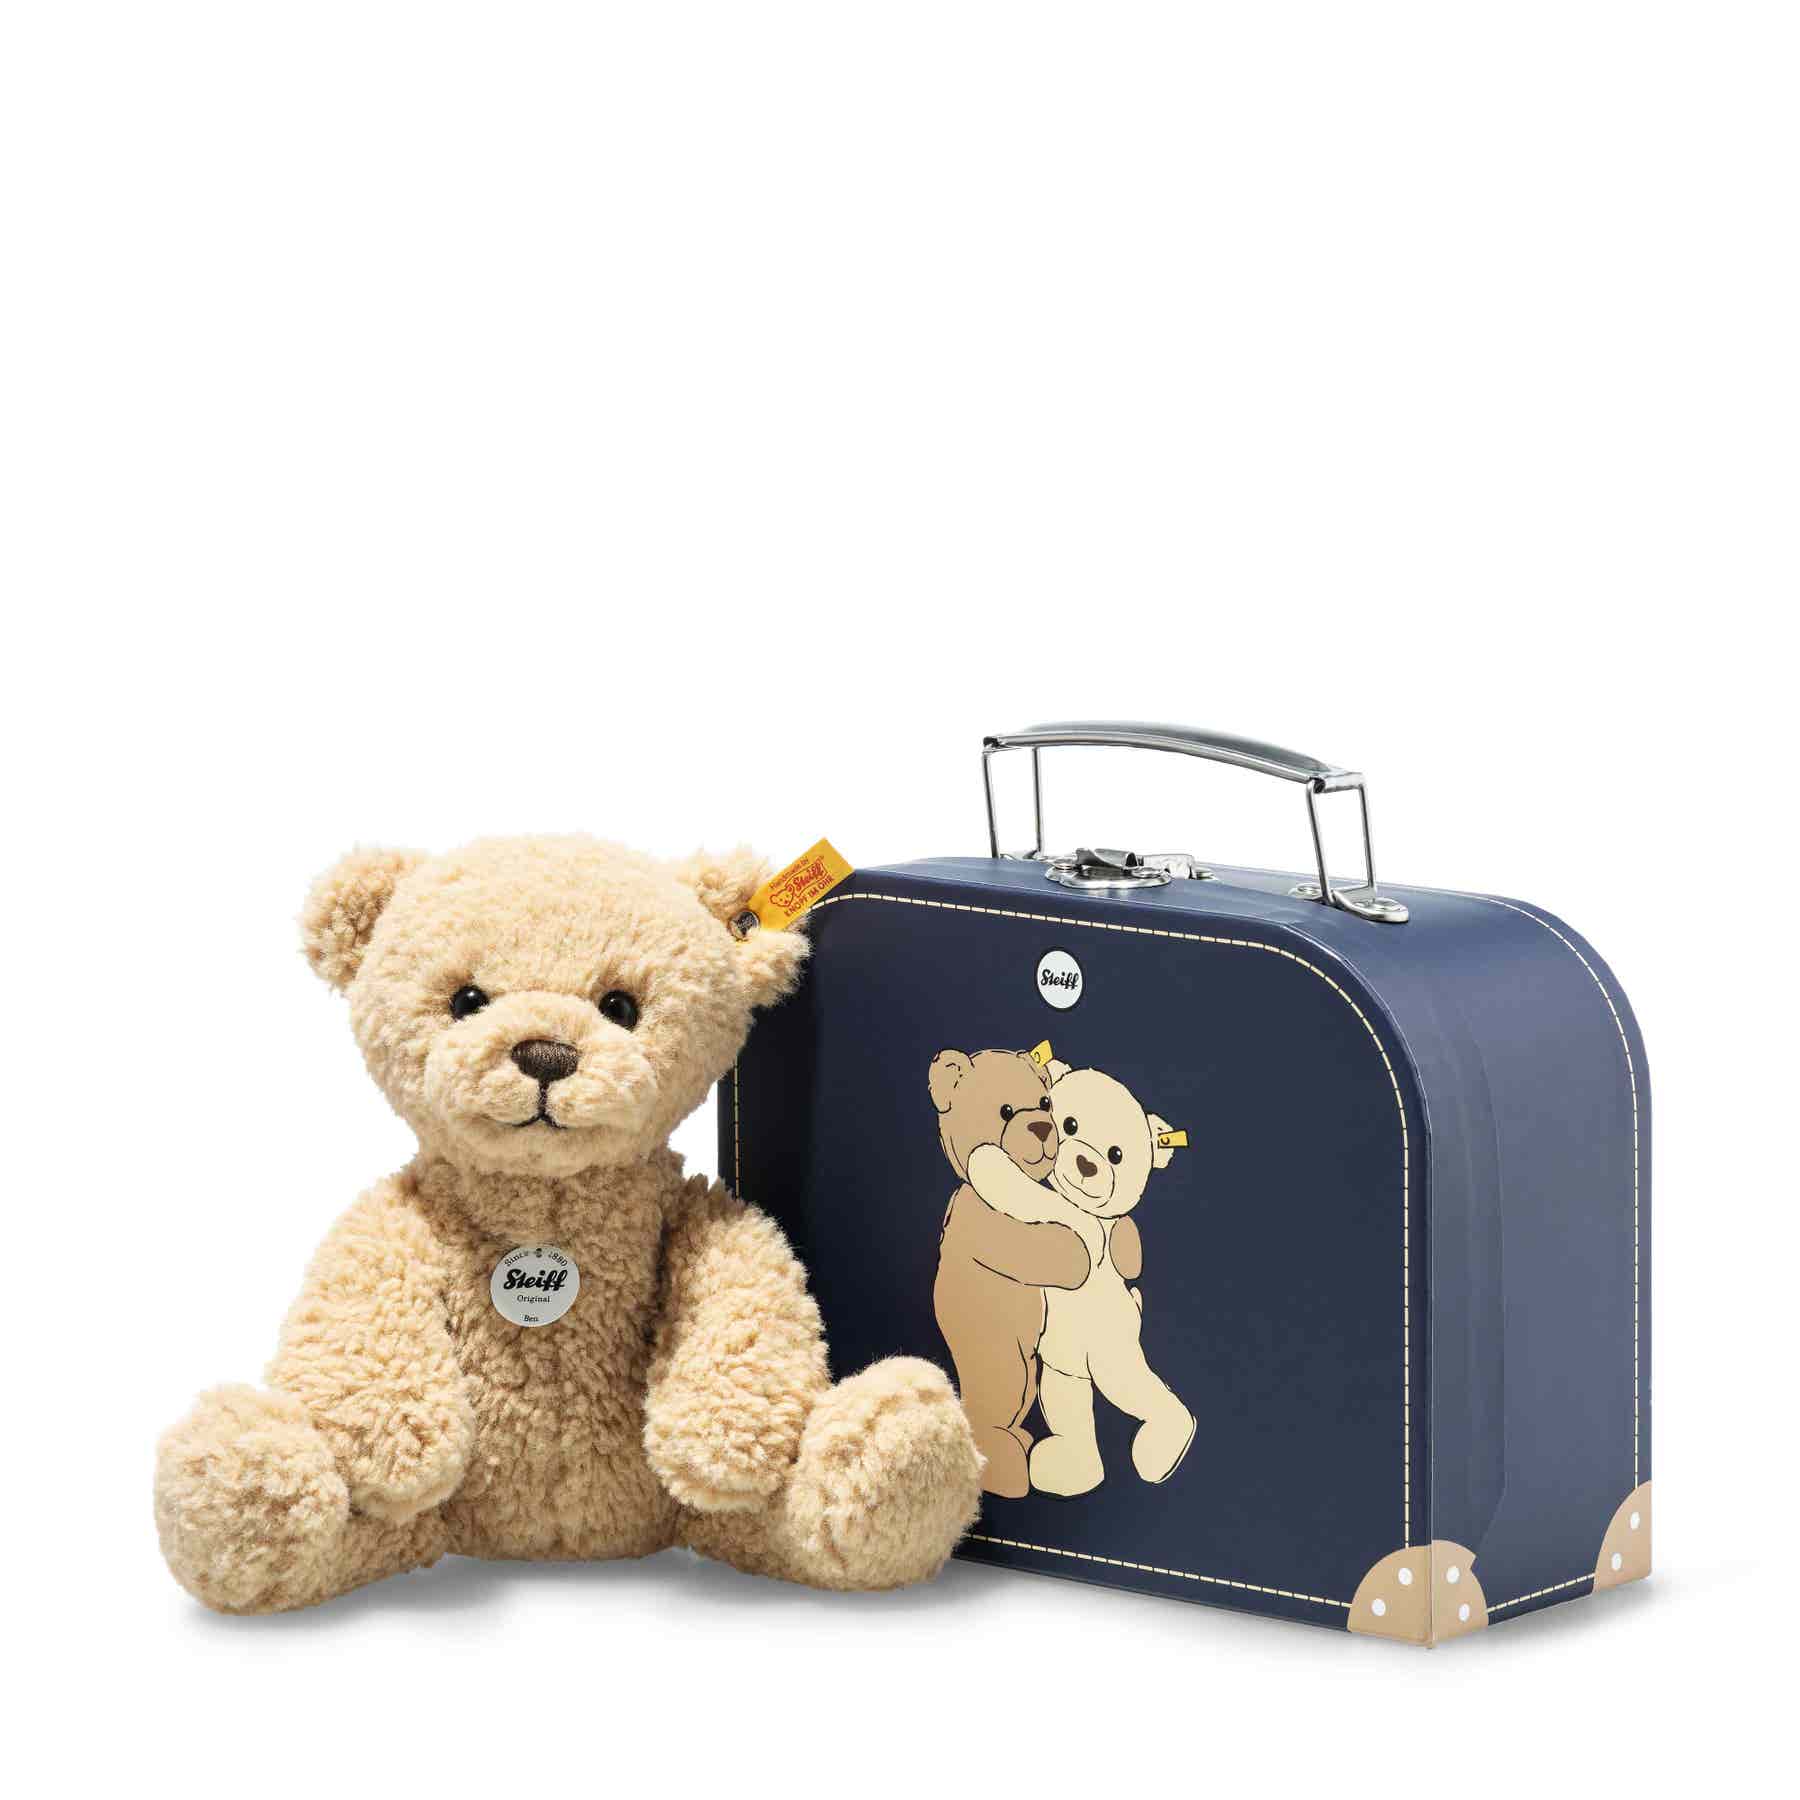 Kuscheltiere im Koffer/Teddy beige/blau 28cm Steiff Ben